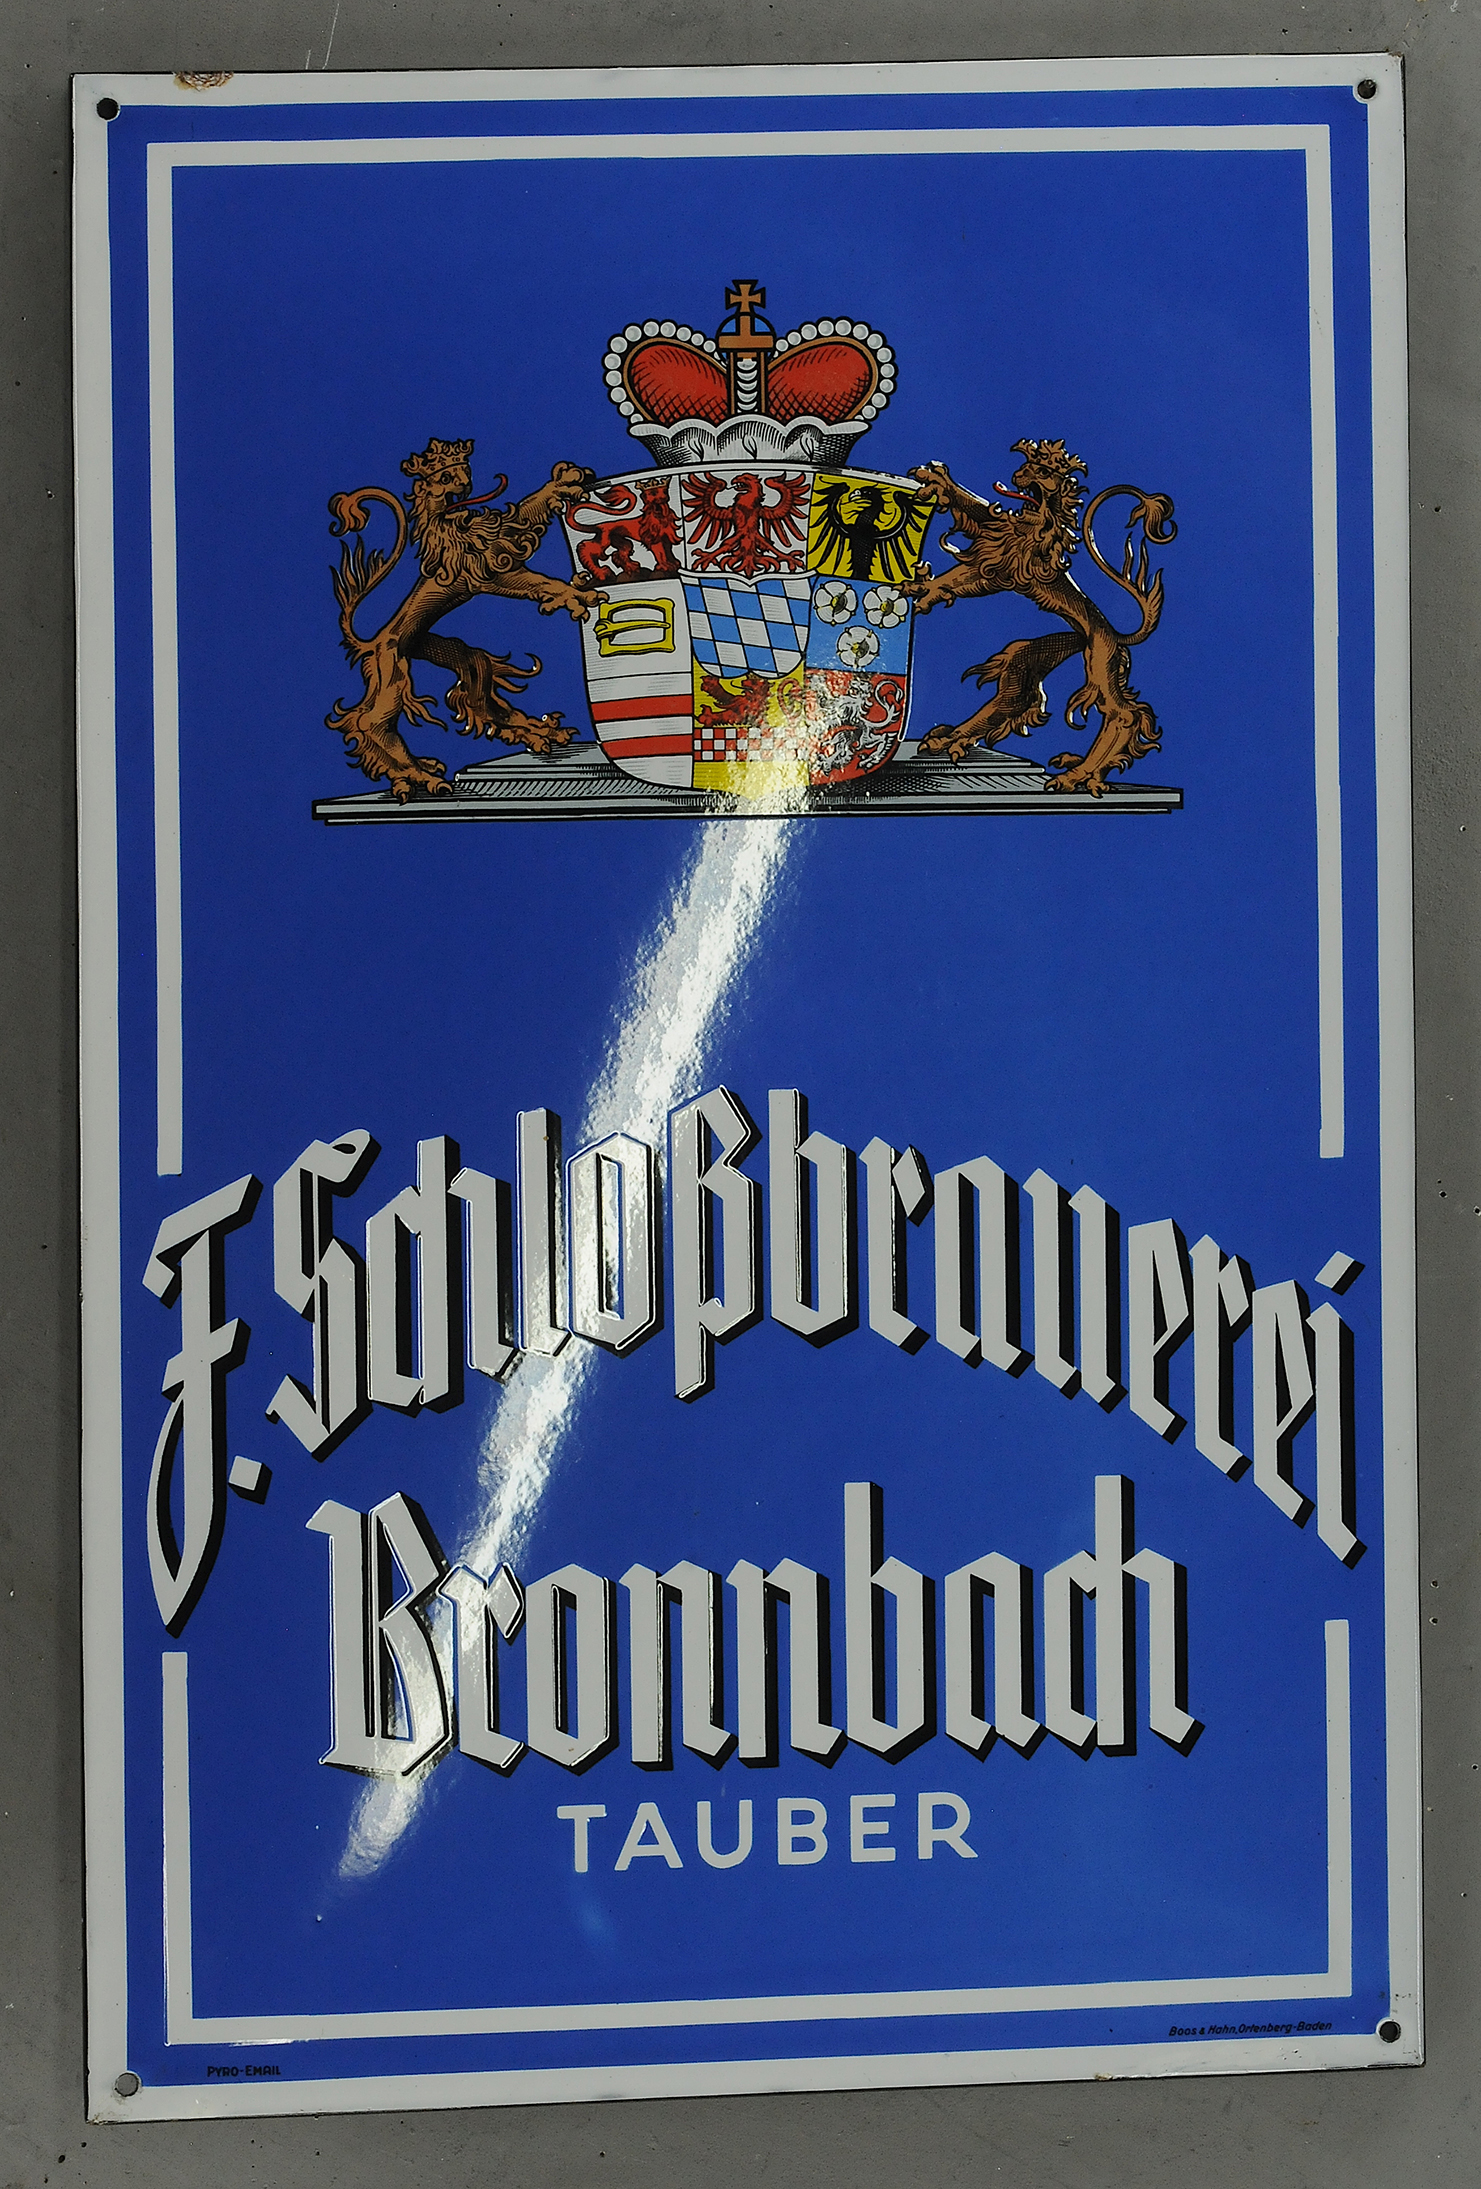 Schlossbräu - Image 3 of 3